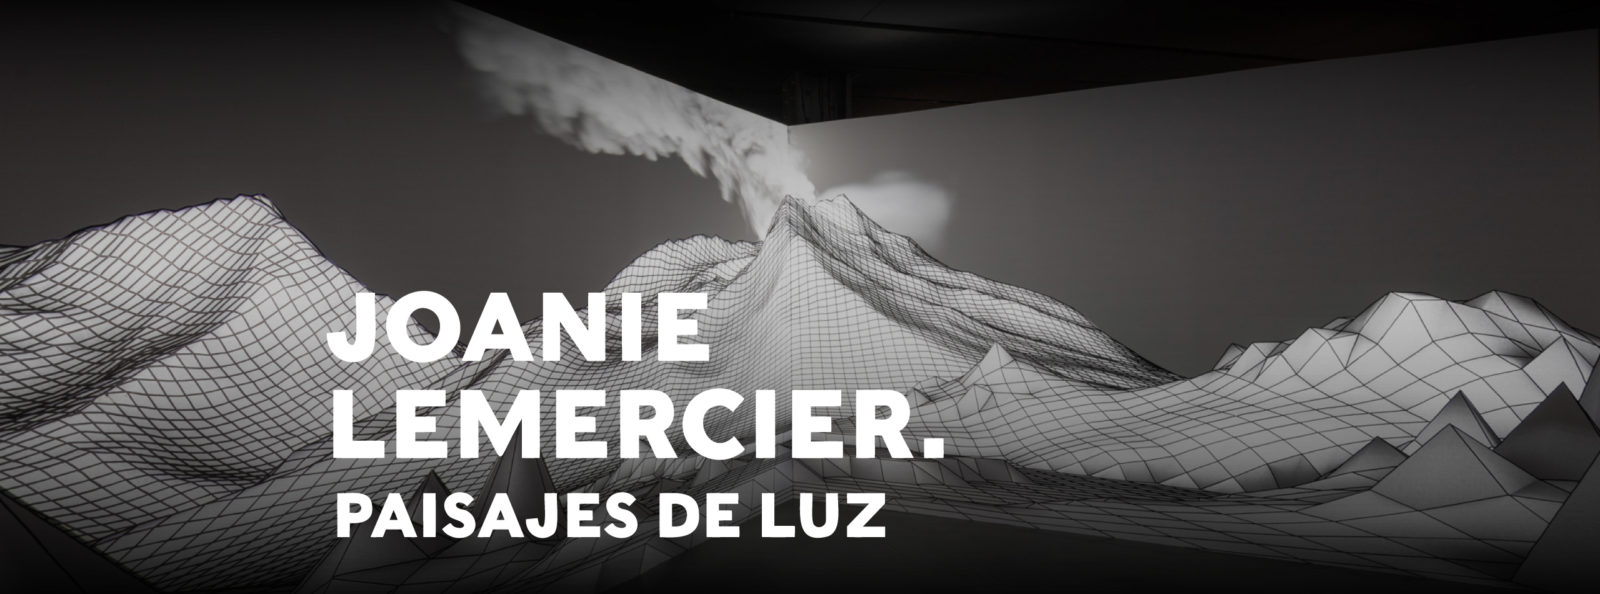 Joanie Lemercier. Paisajes de luz